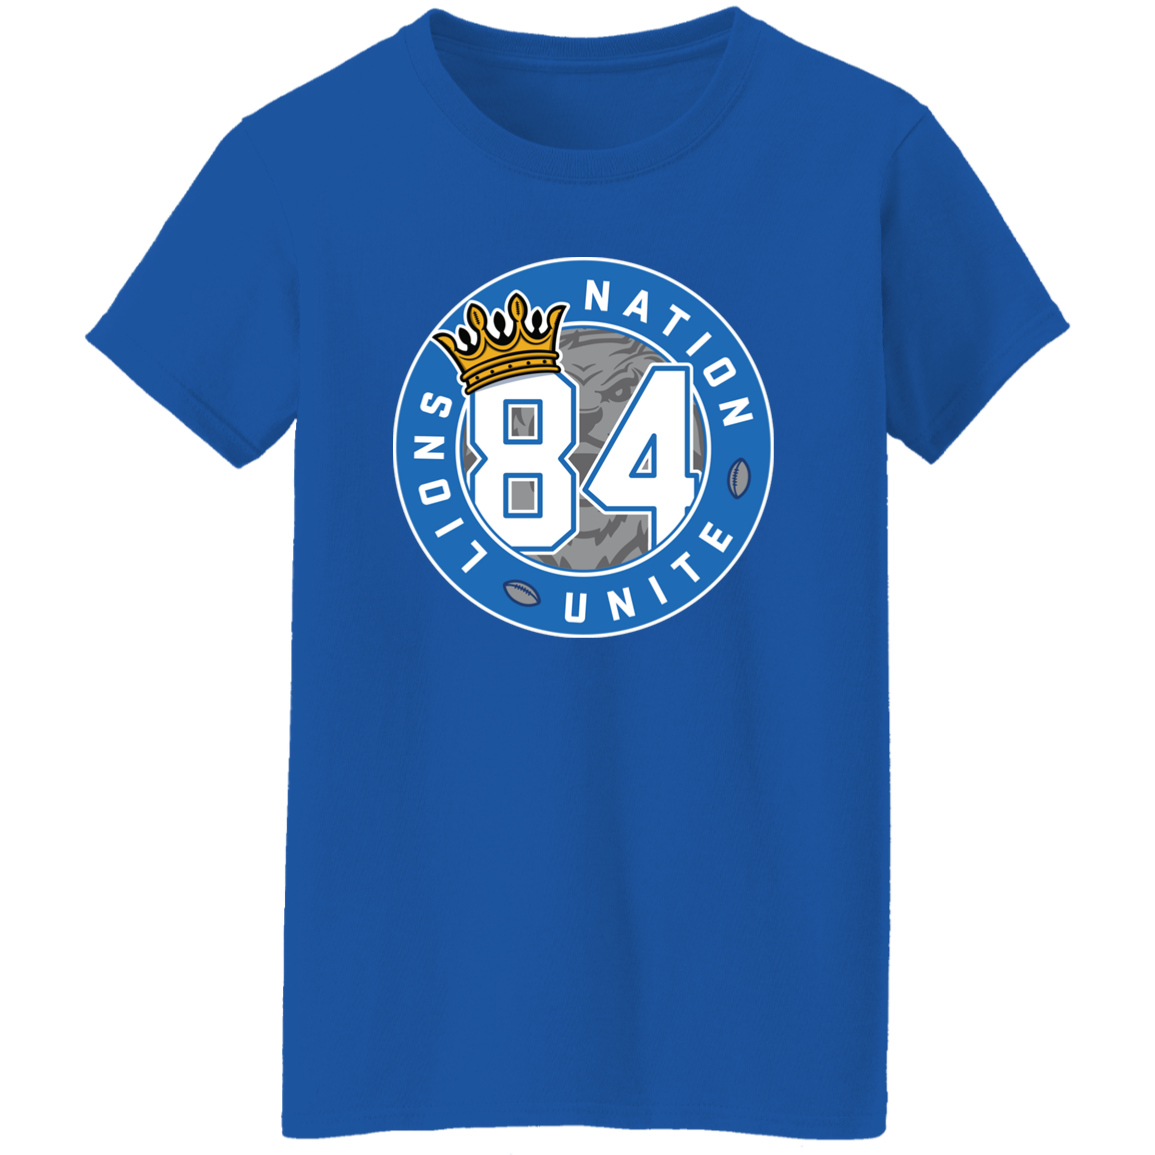 No. 84 Lions Nation Unite® Ladies' T-Shirt